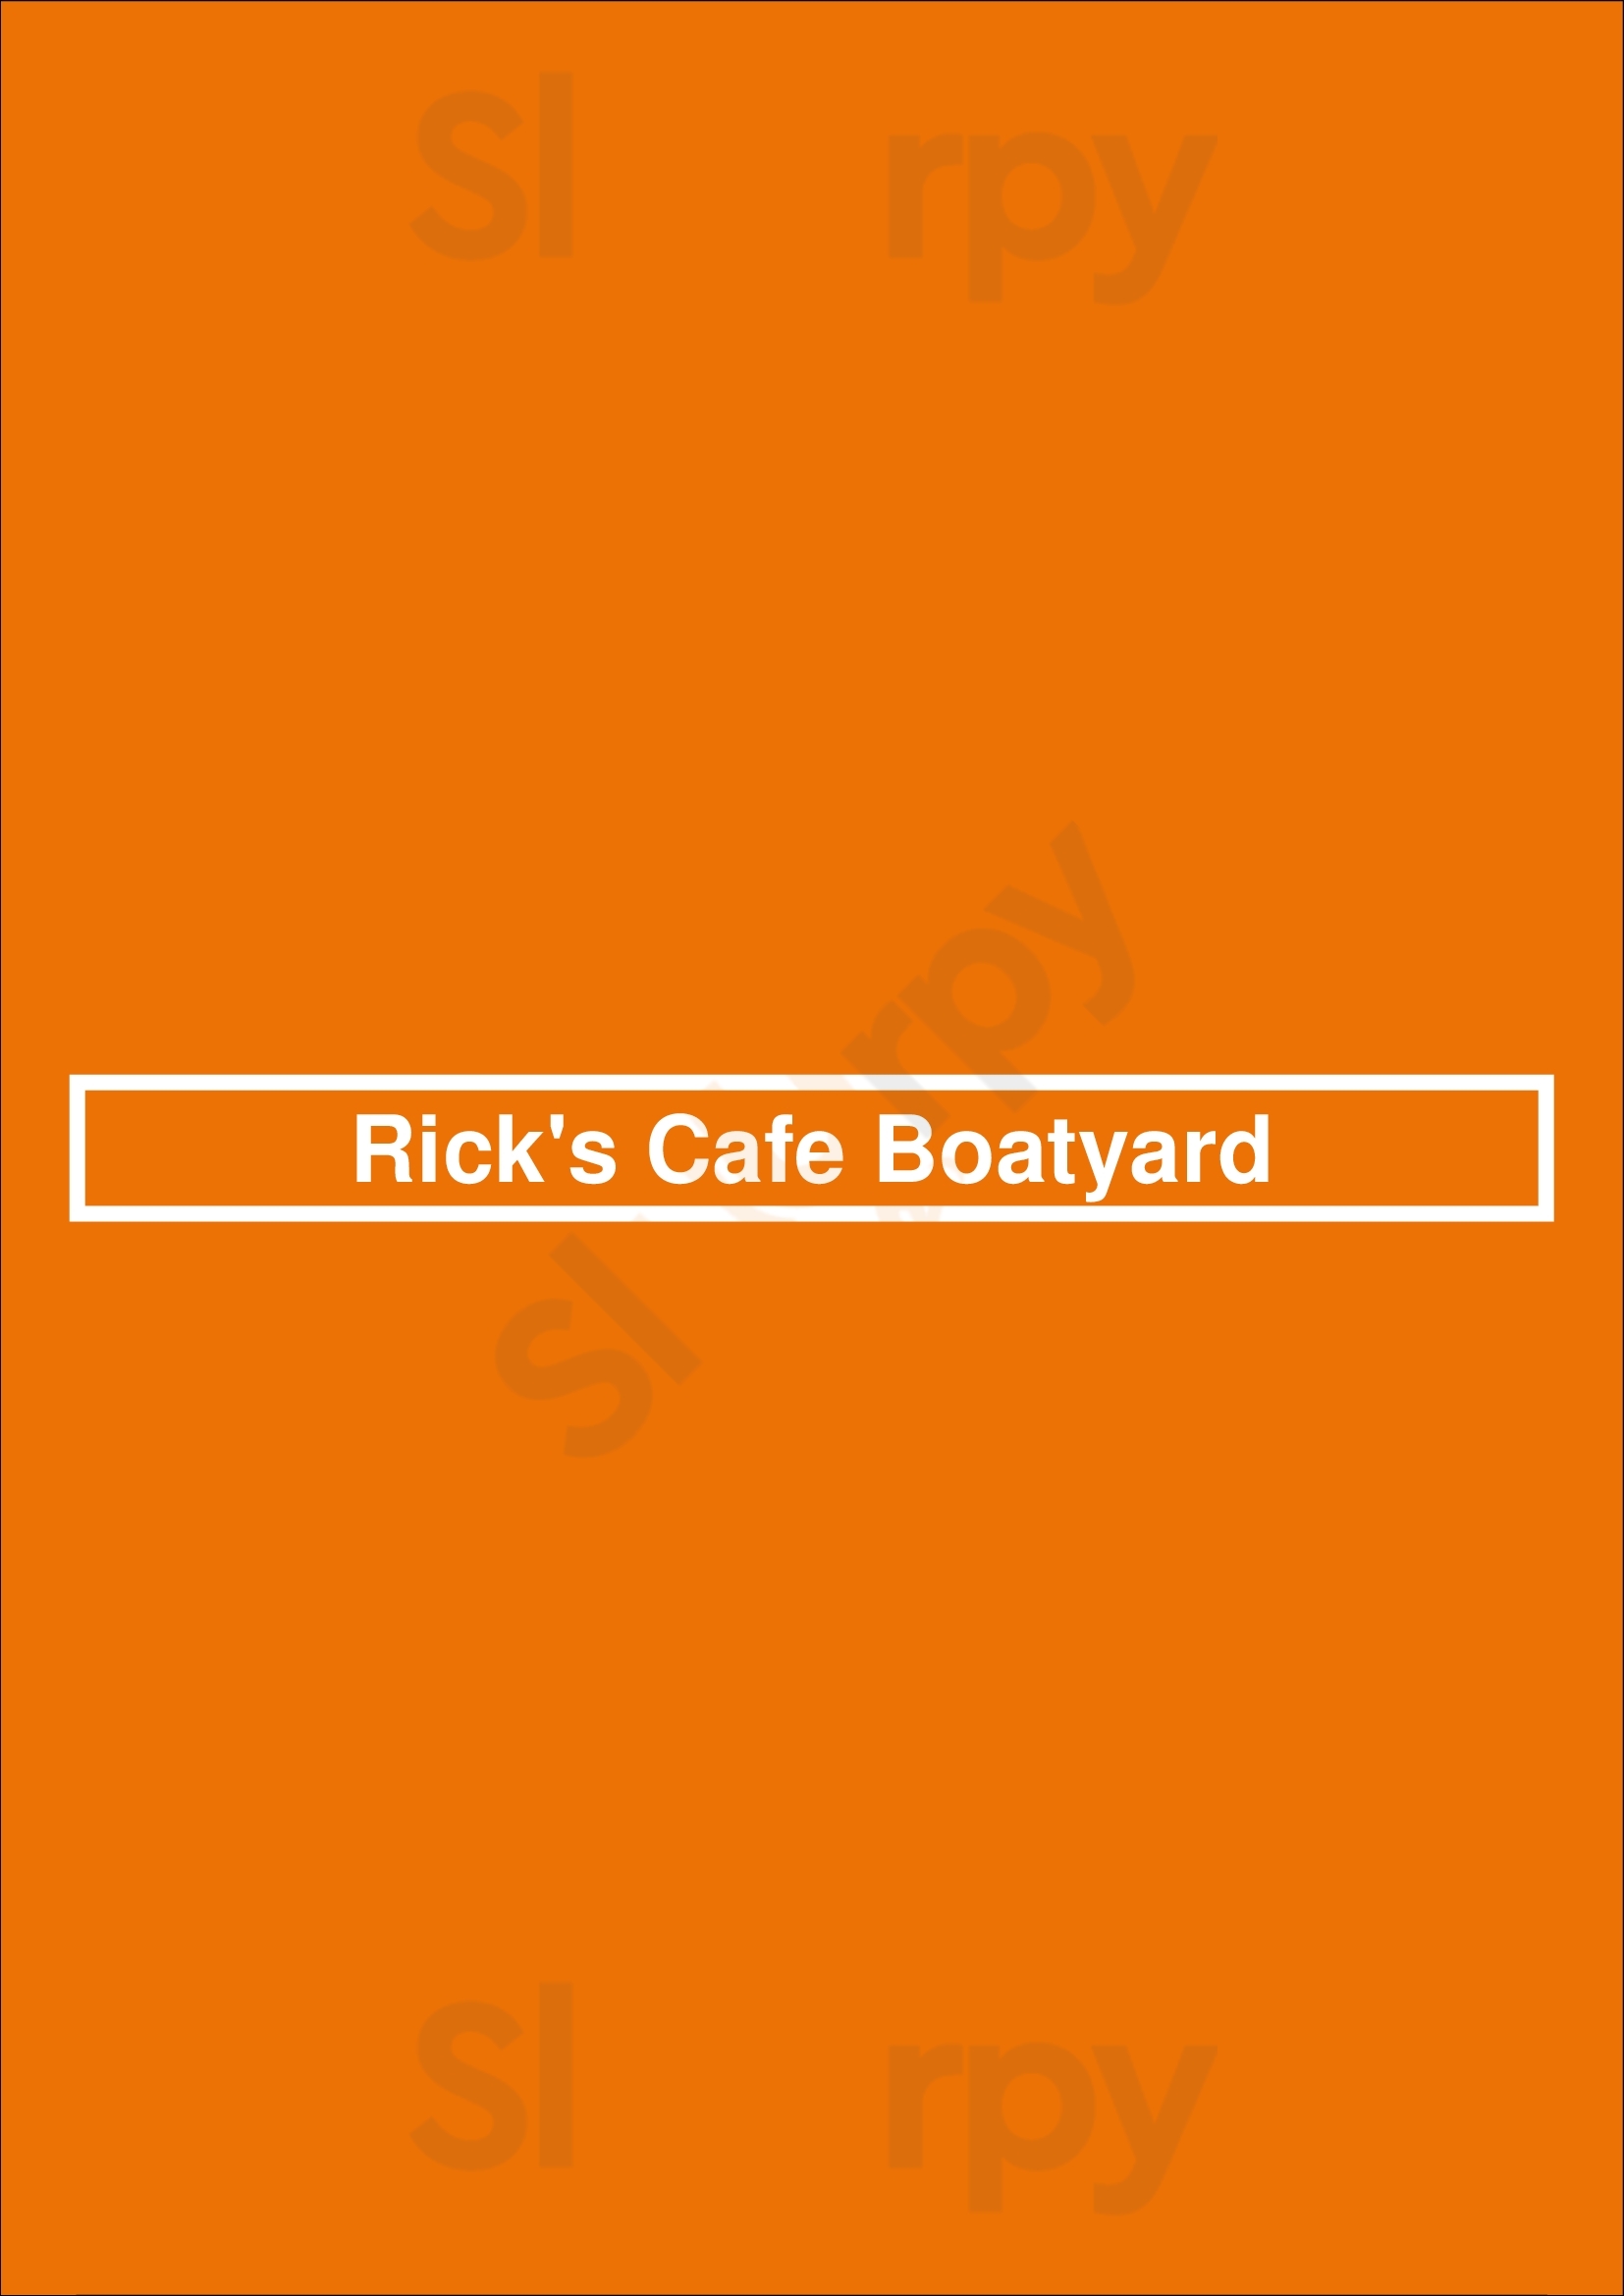 Rick's Cafe Boatyard Indianapolis Menu - 1